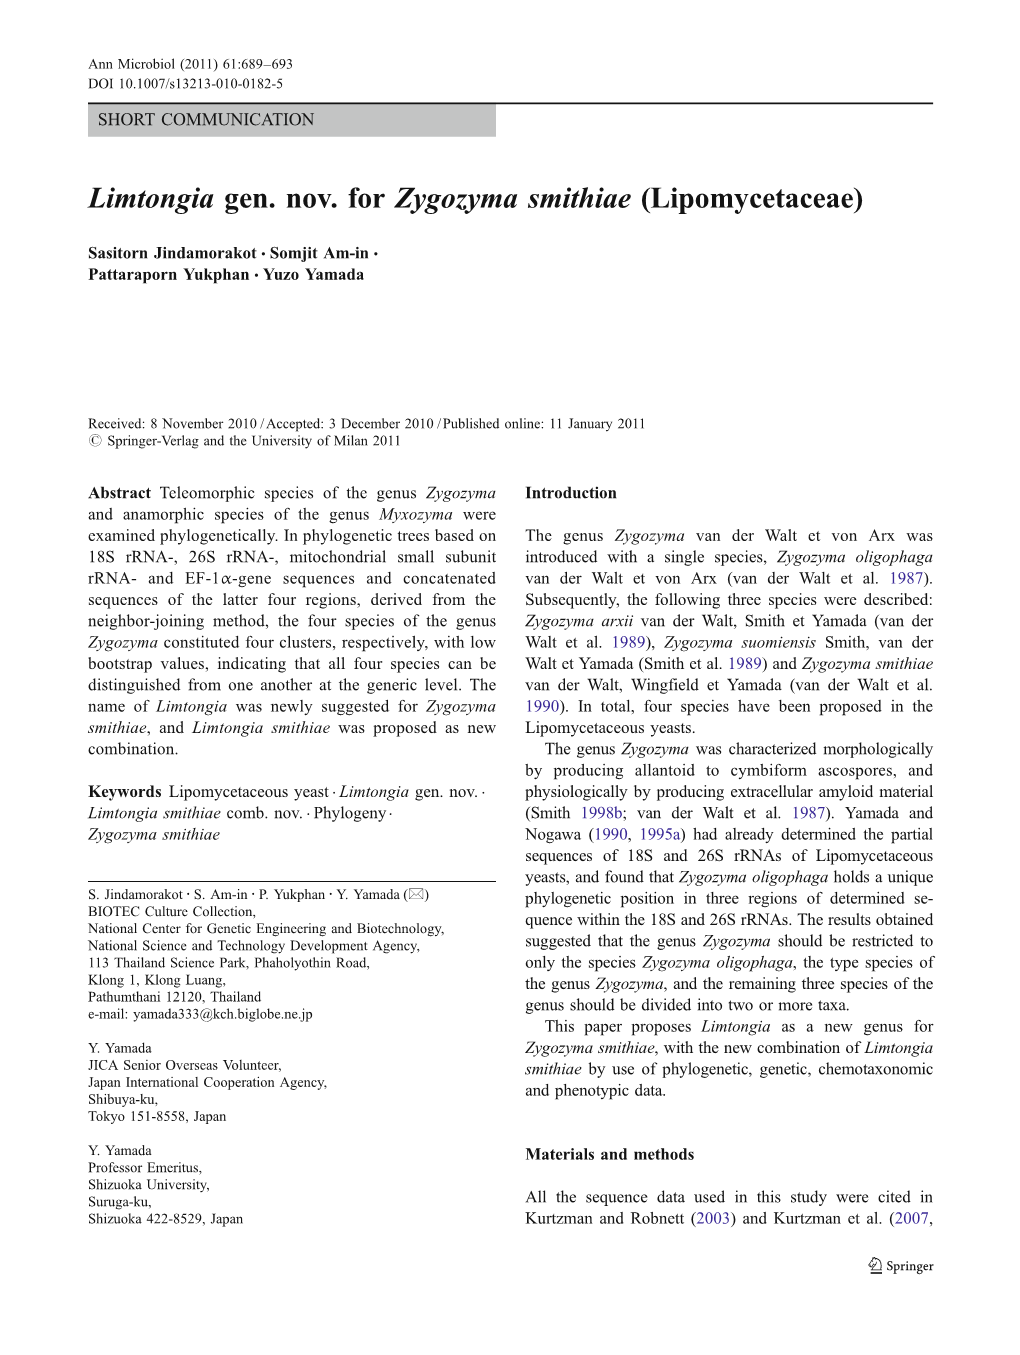 Limtongia Gen. Nov. for Zygozyma Smithiae (Lipomycetaceae)